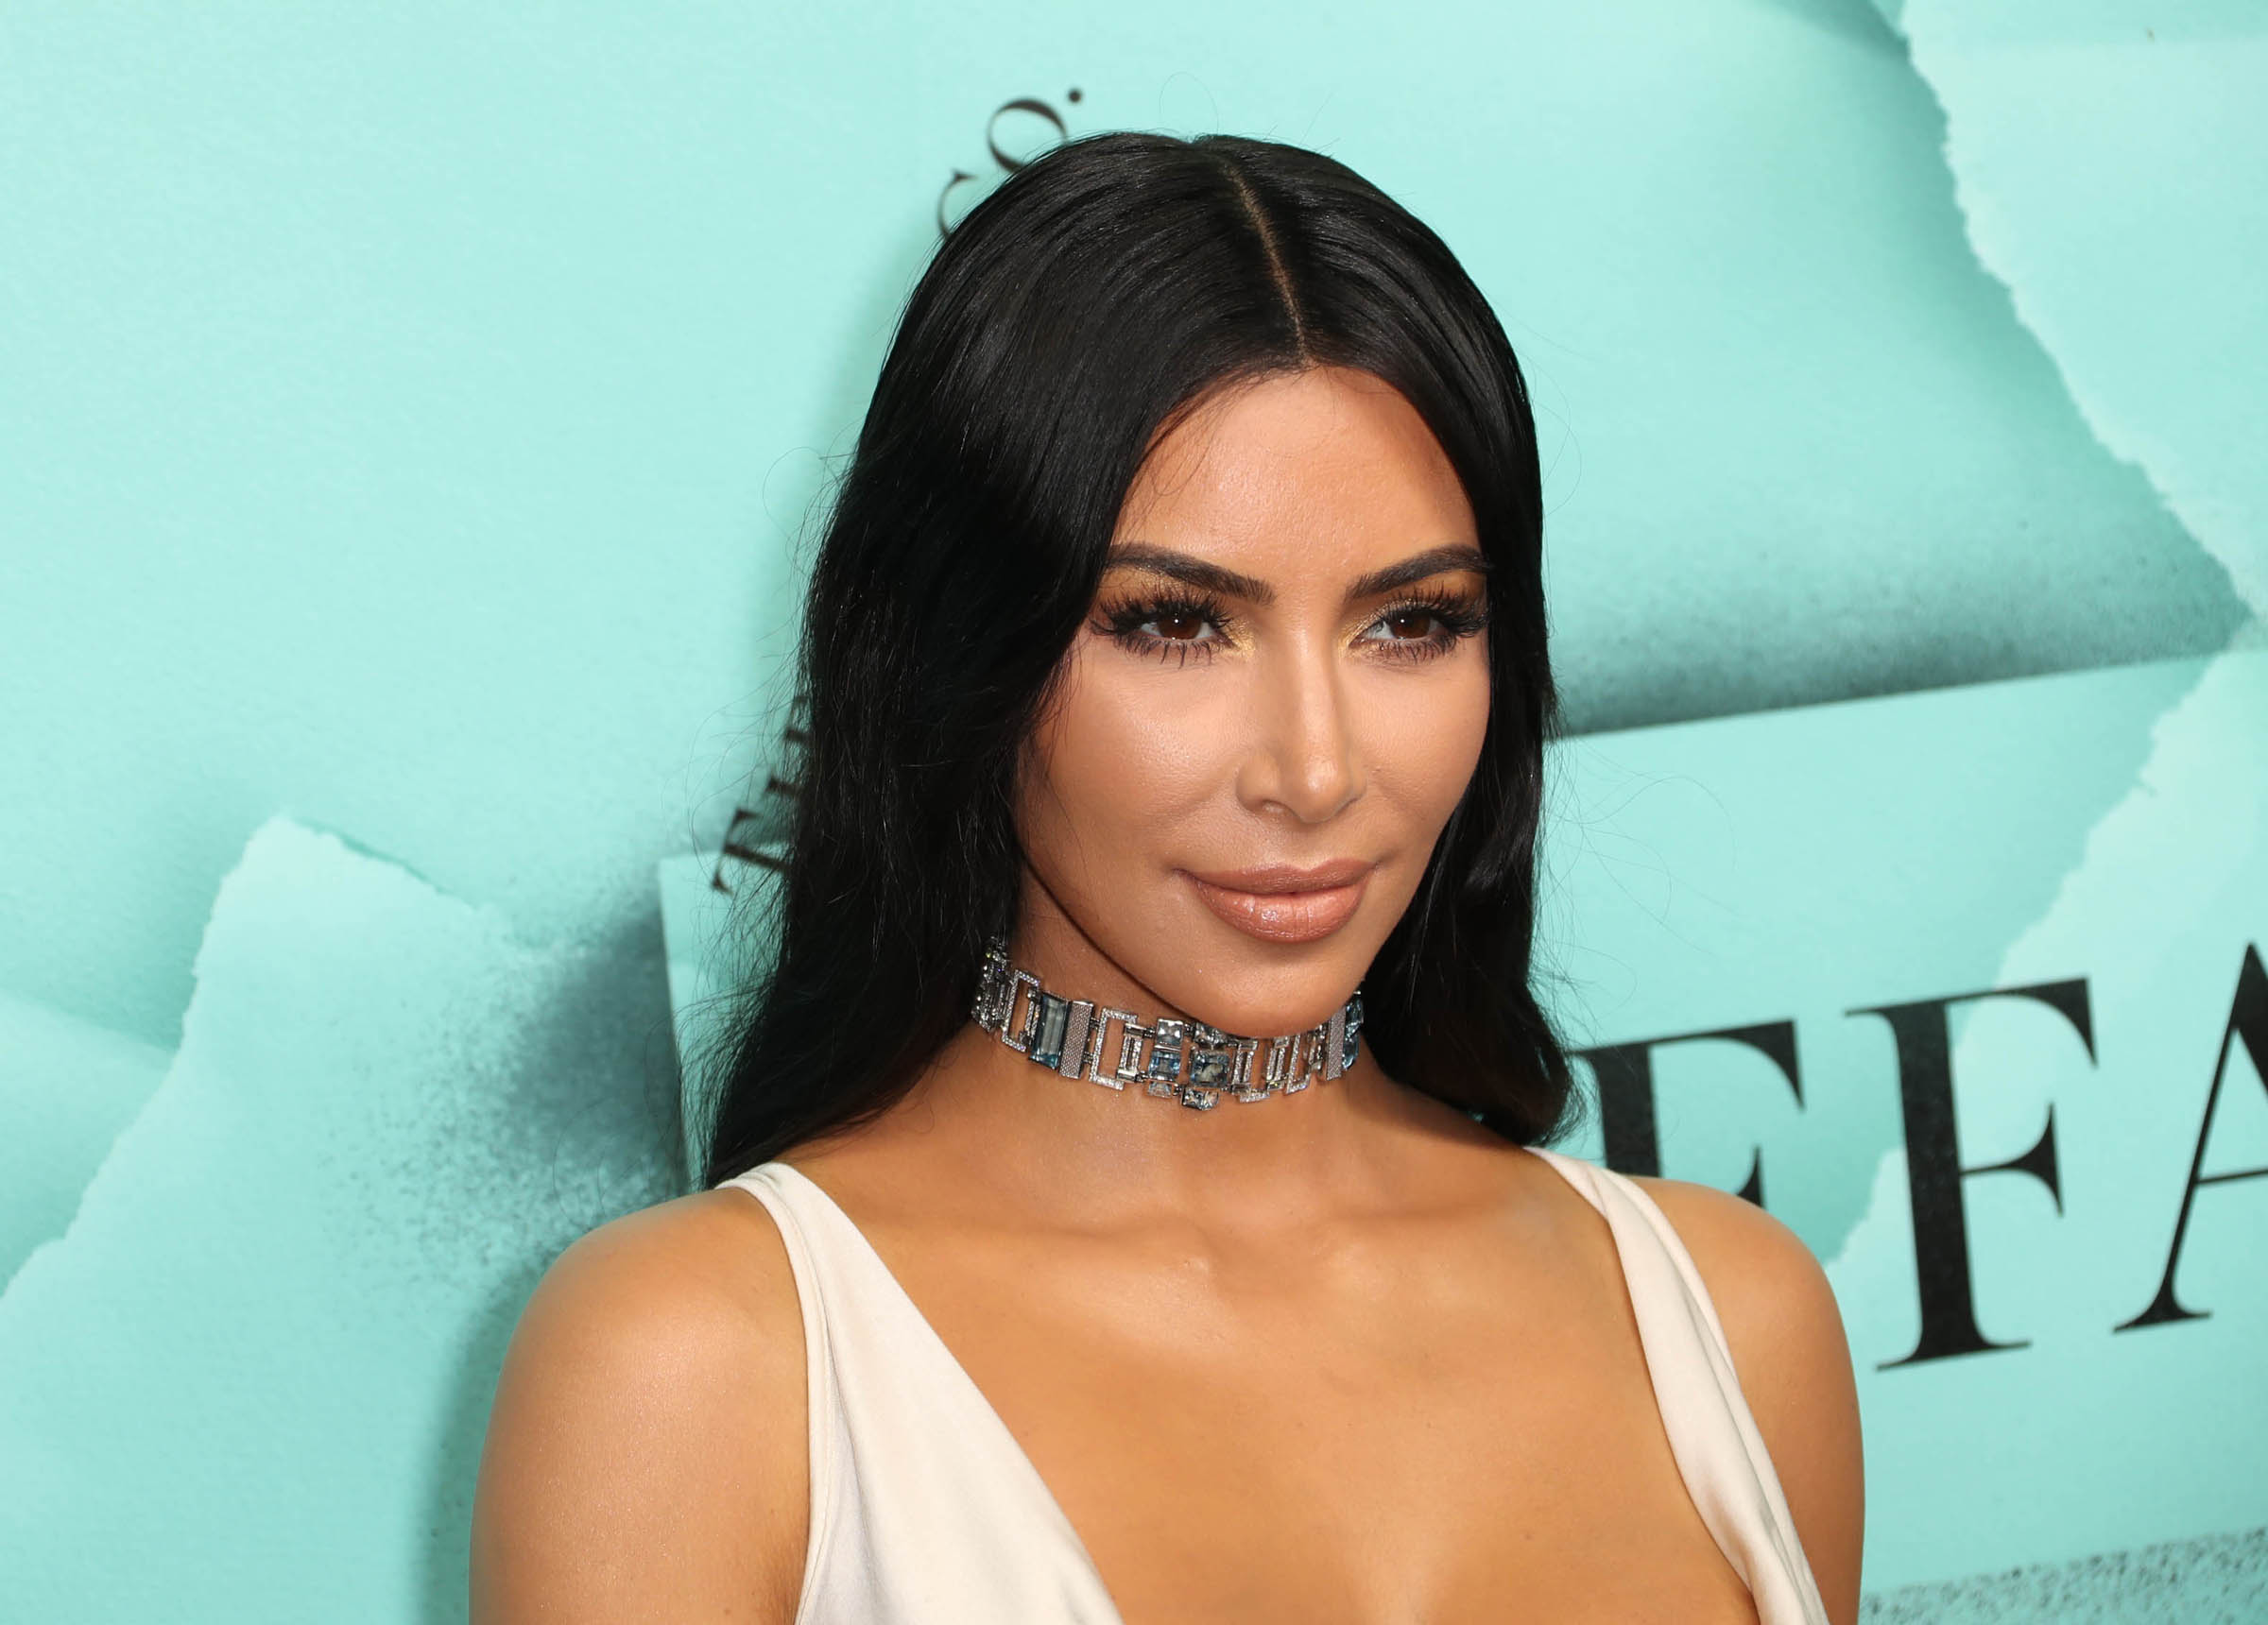 Semmi különös, csak Kim Kardashian vacsorázni ment: átlátszó felsőben  villantott cicit – Itt vannak a képek - Blikk